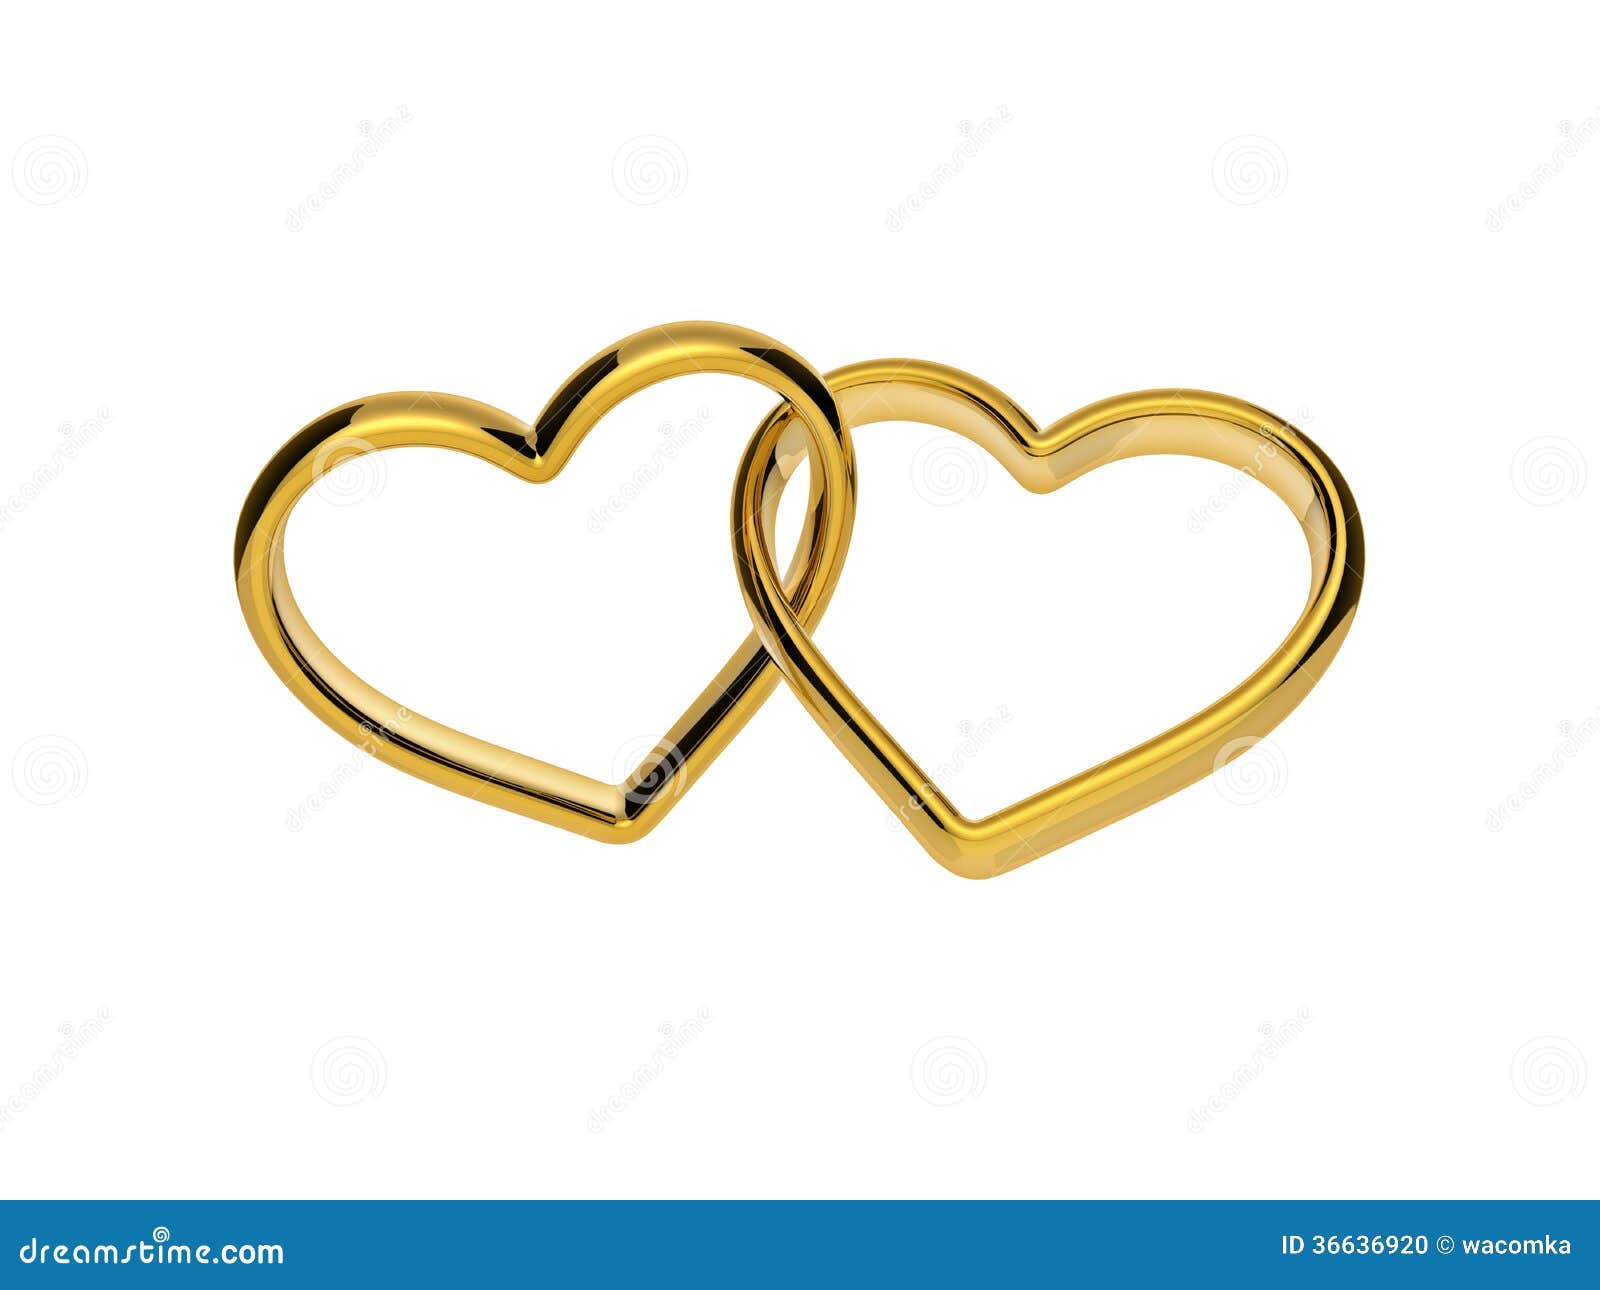 free linked hearts clip art - photo #34